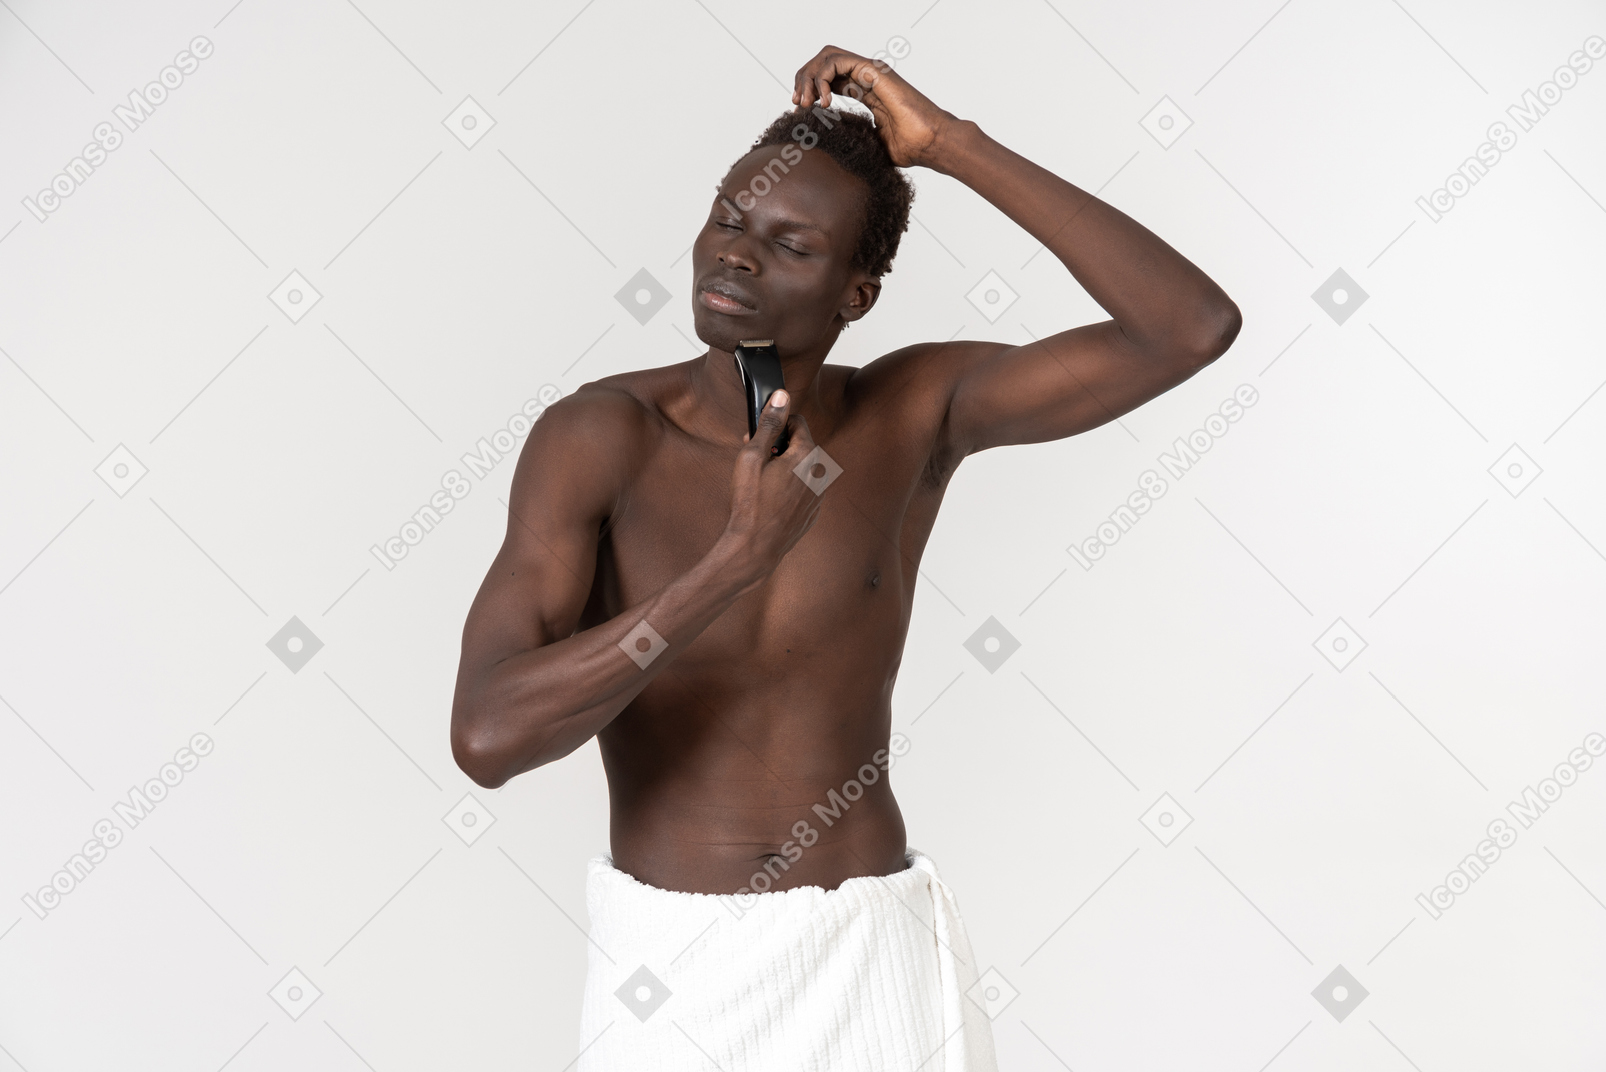 Un giovane uomo di colore con un telo da bagno bianco attorno alla vita mentre faceva la routine mattutina